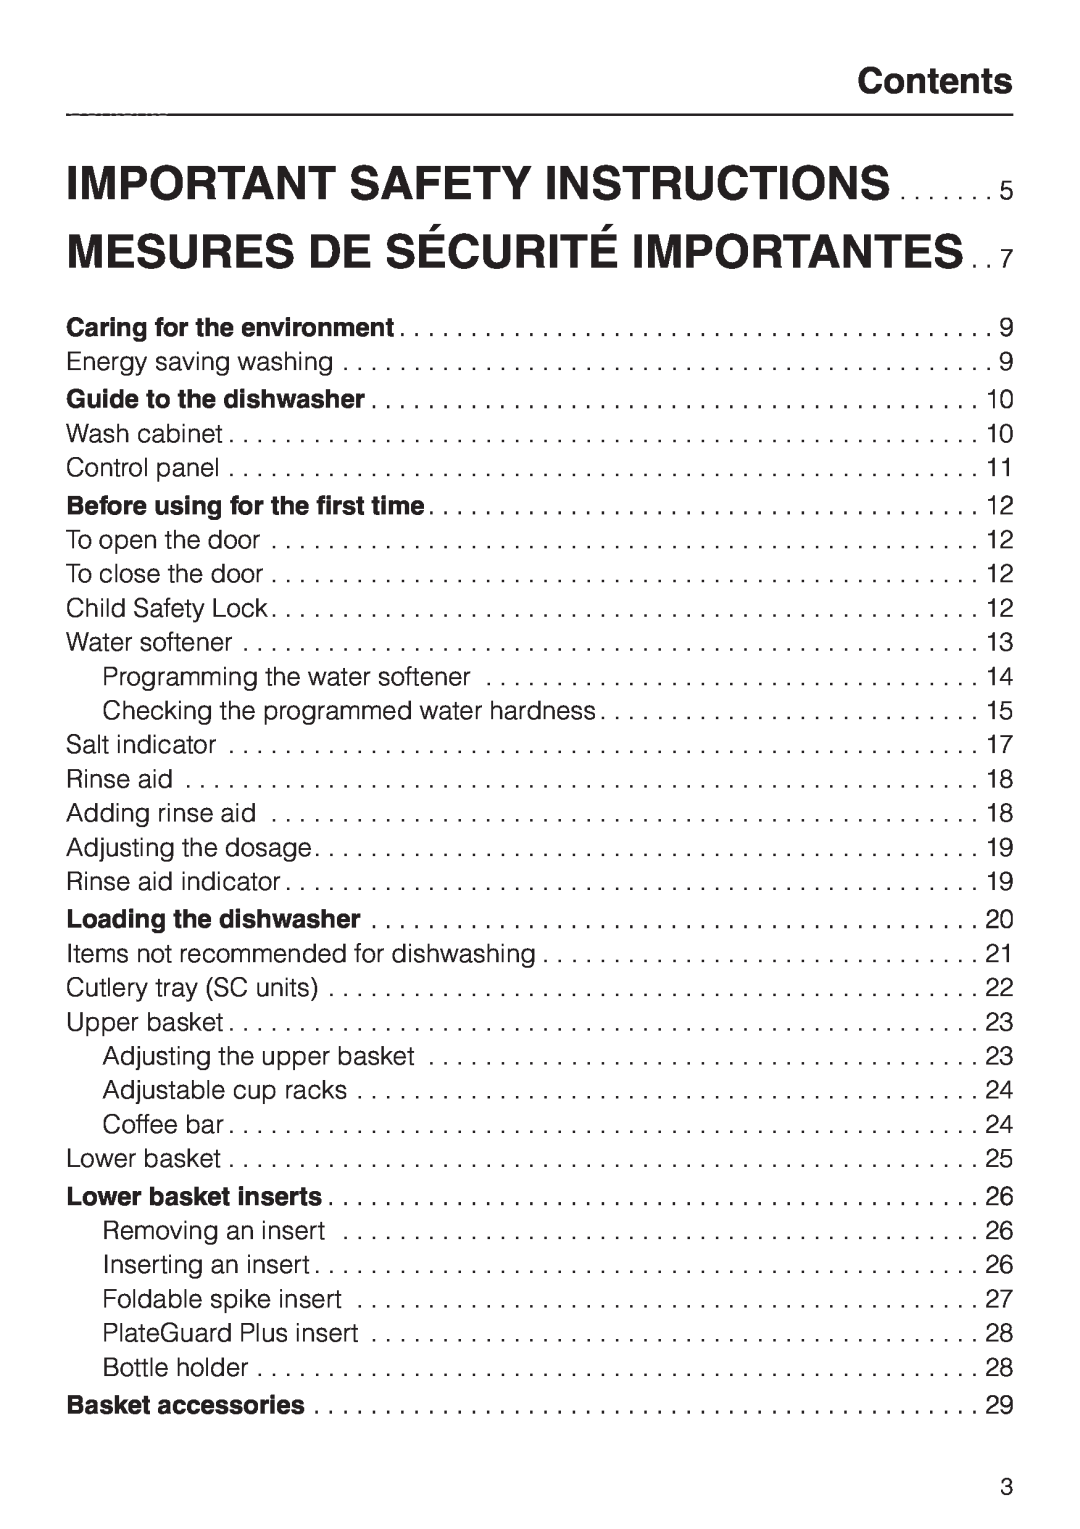 Miele G 856 SC ELITE operating instructions Important Safety Instructions, Mesures De Sécurité Importantes, Contents 